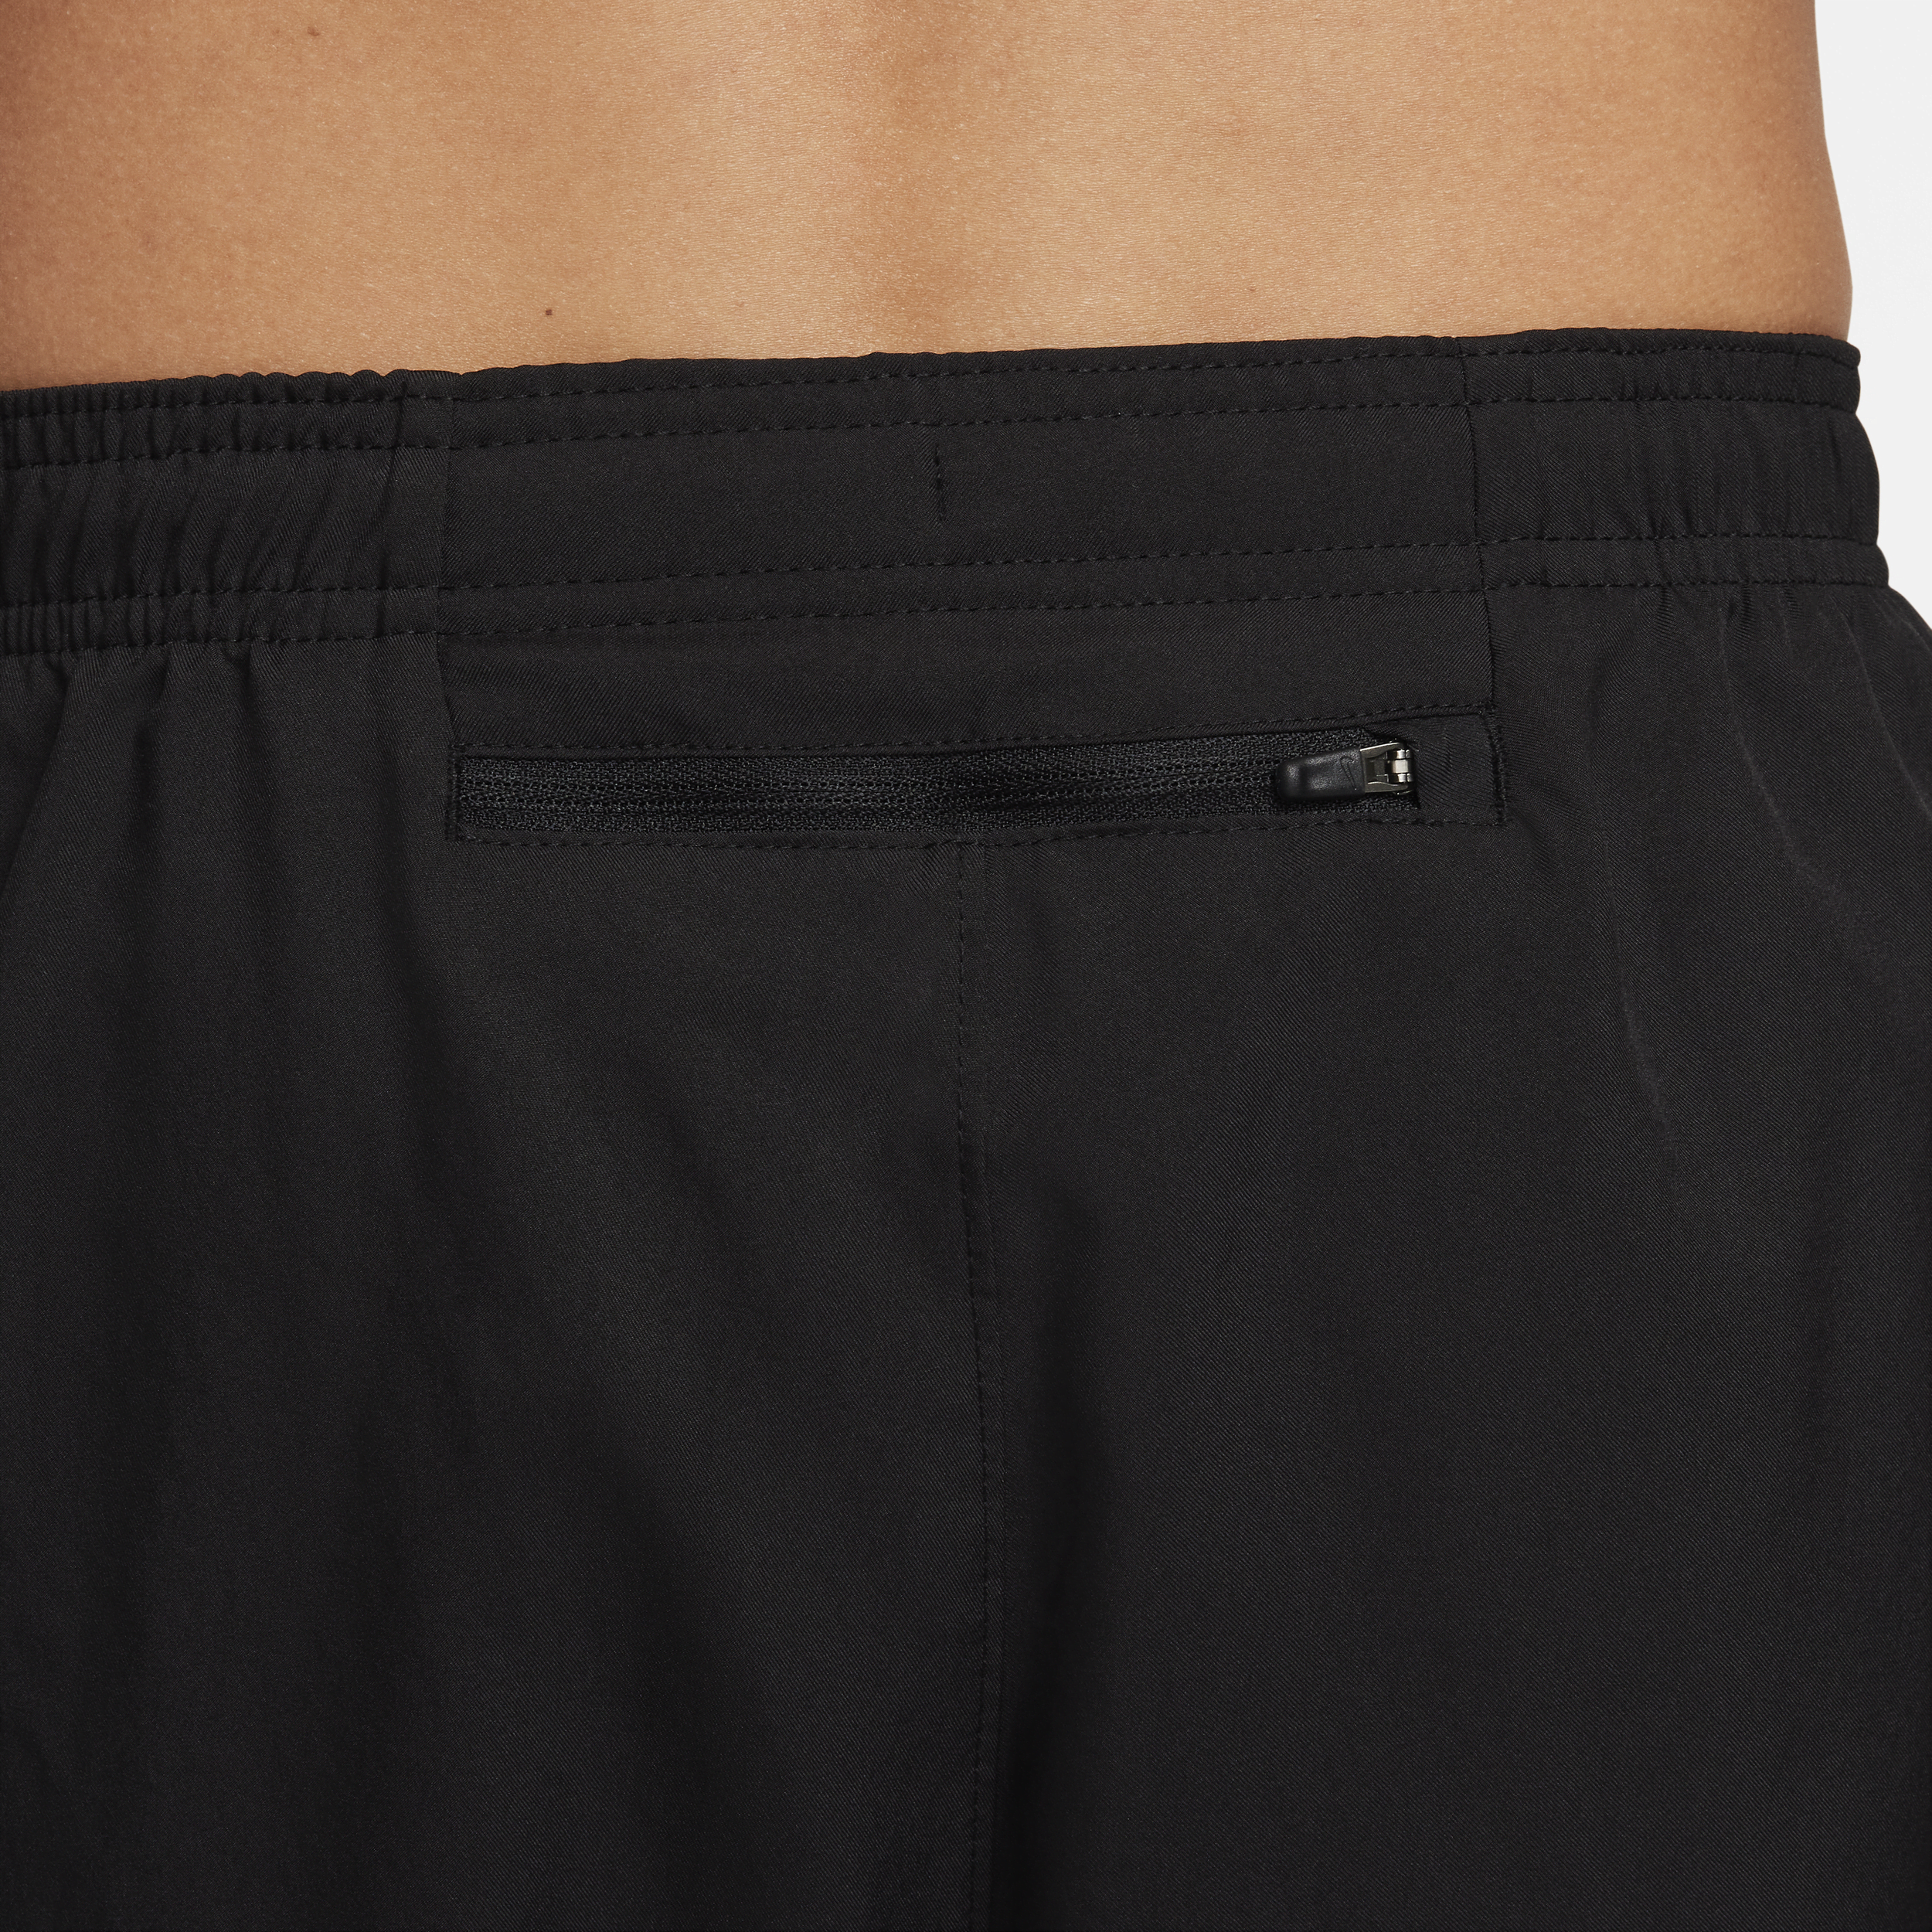 Nike Challenger Dri-FIT geweven hardloopbroek voor heren Zwart